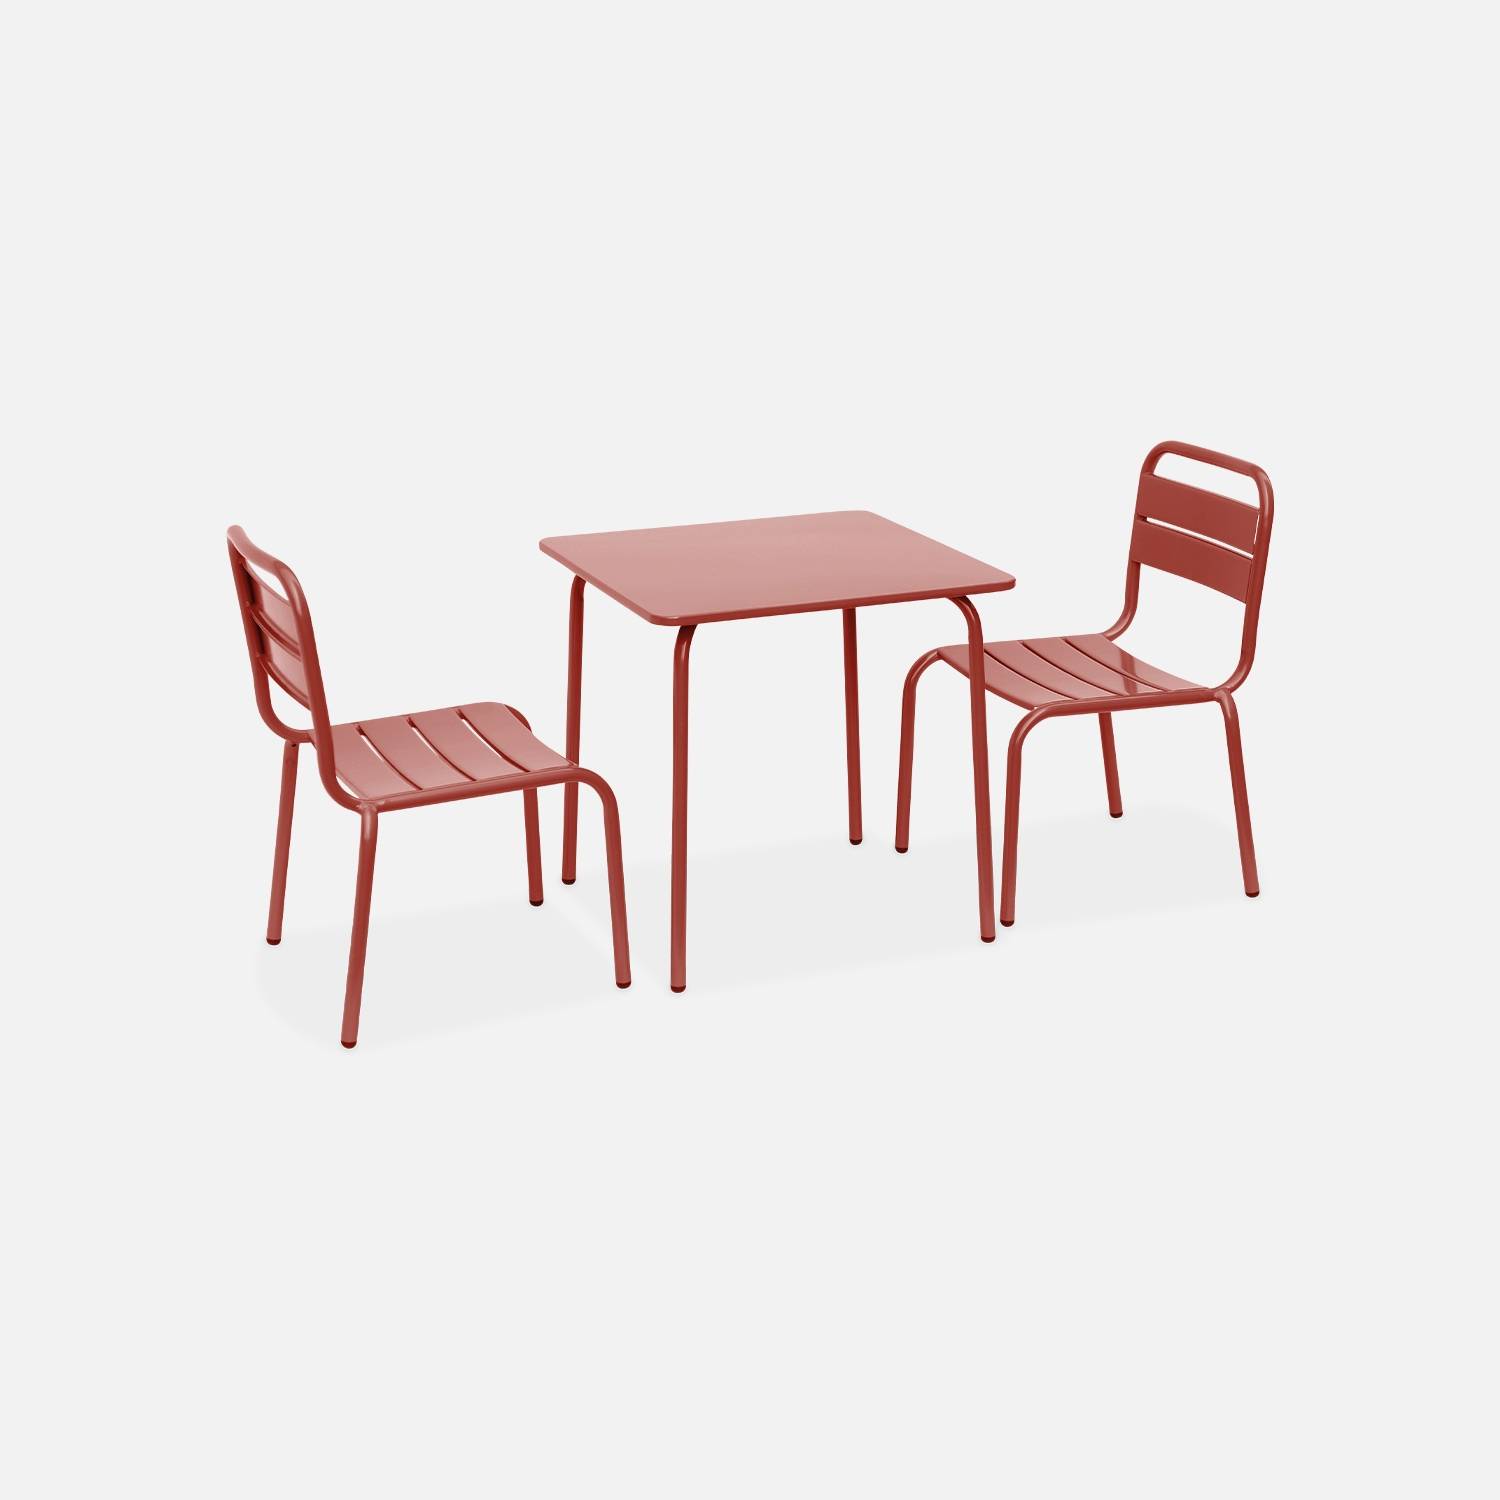 Tisch und 2 Stühle für Kinder graugrün | sweeek